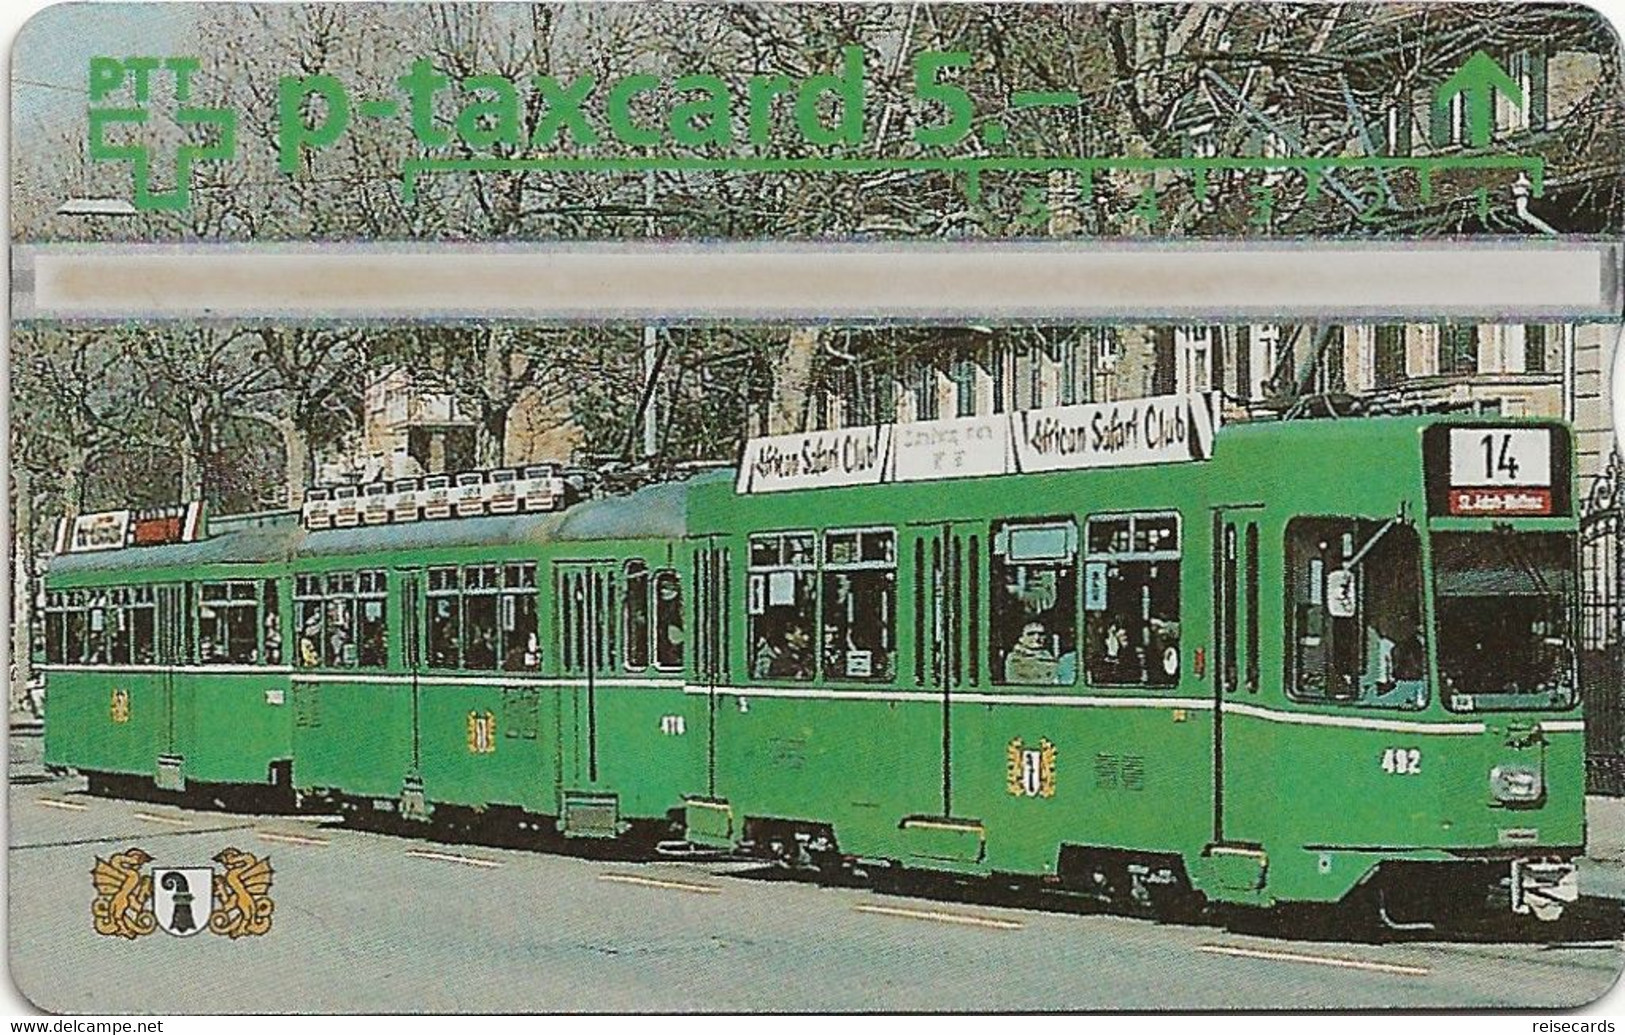 Switzerland: PTT P - KP-94/50C 404L Basler Verkehrs-Betriebe - Dreiwagen-Tramzug - Schweiz